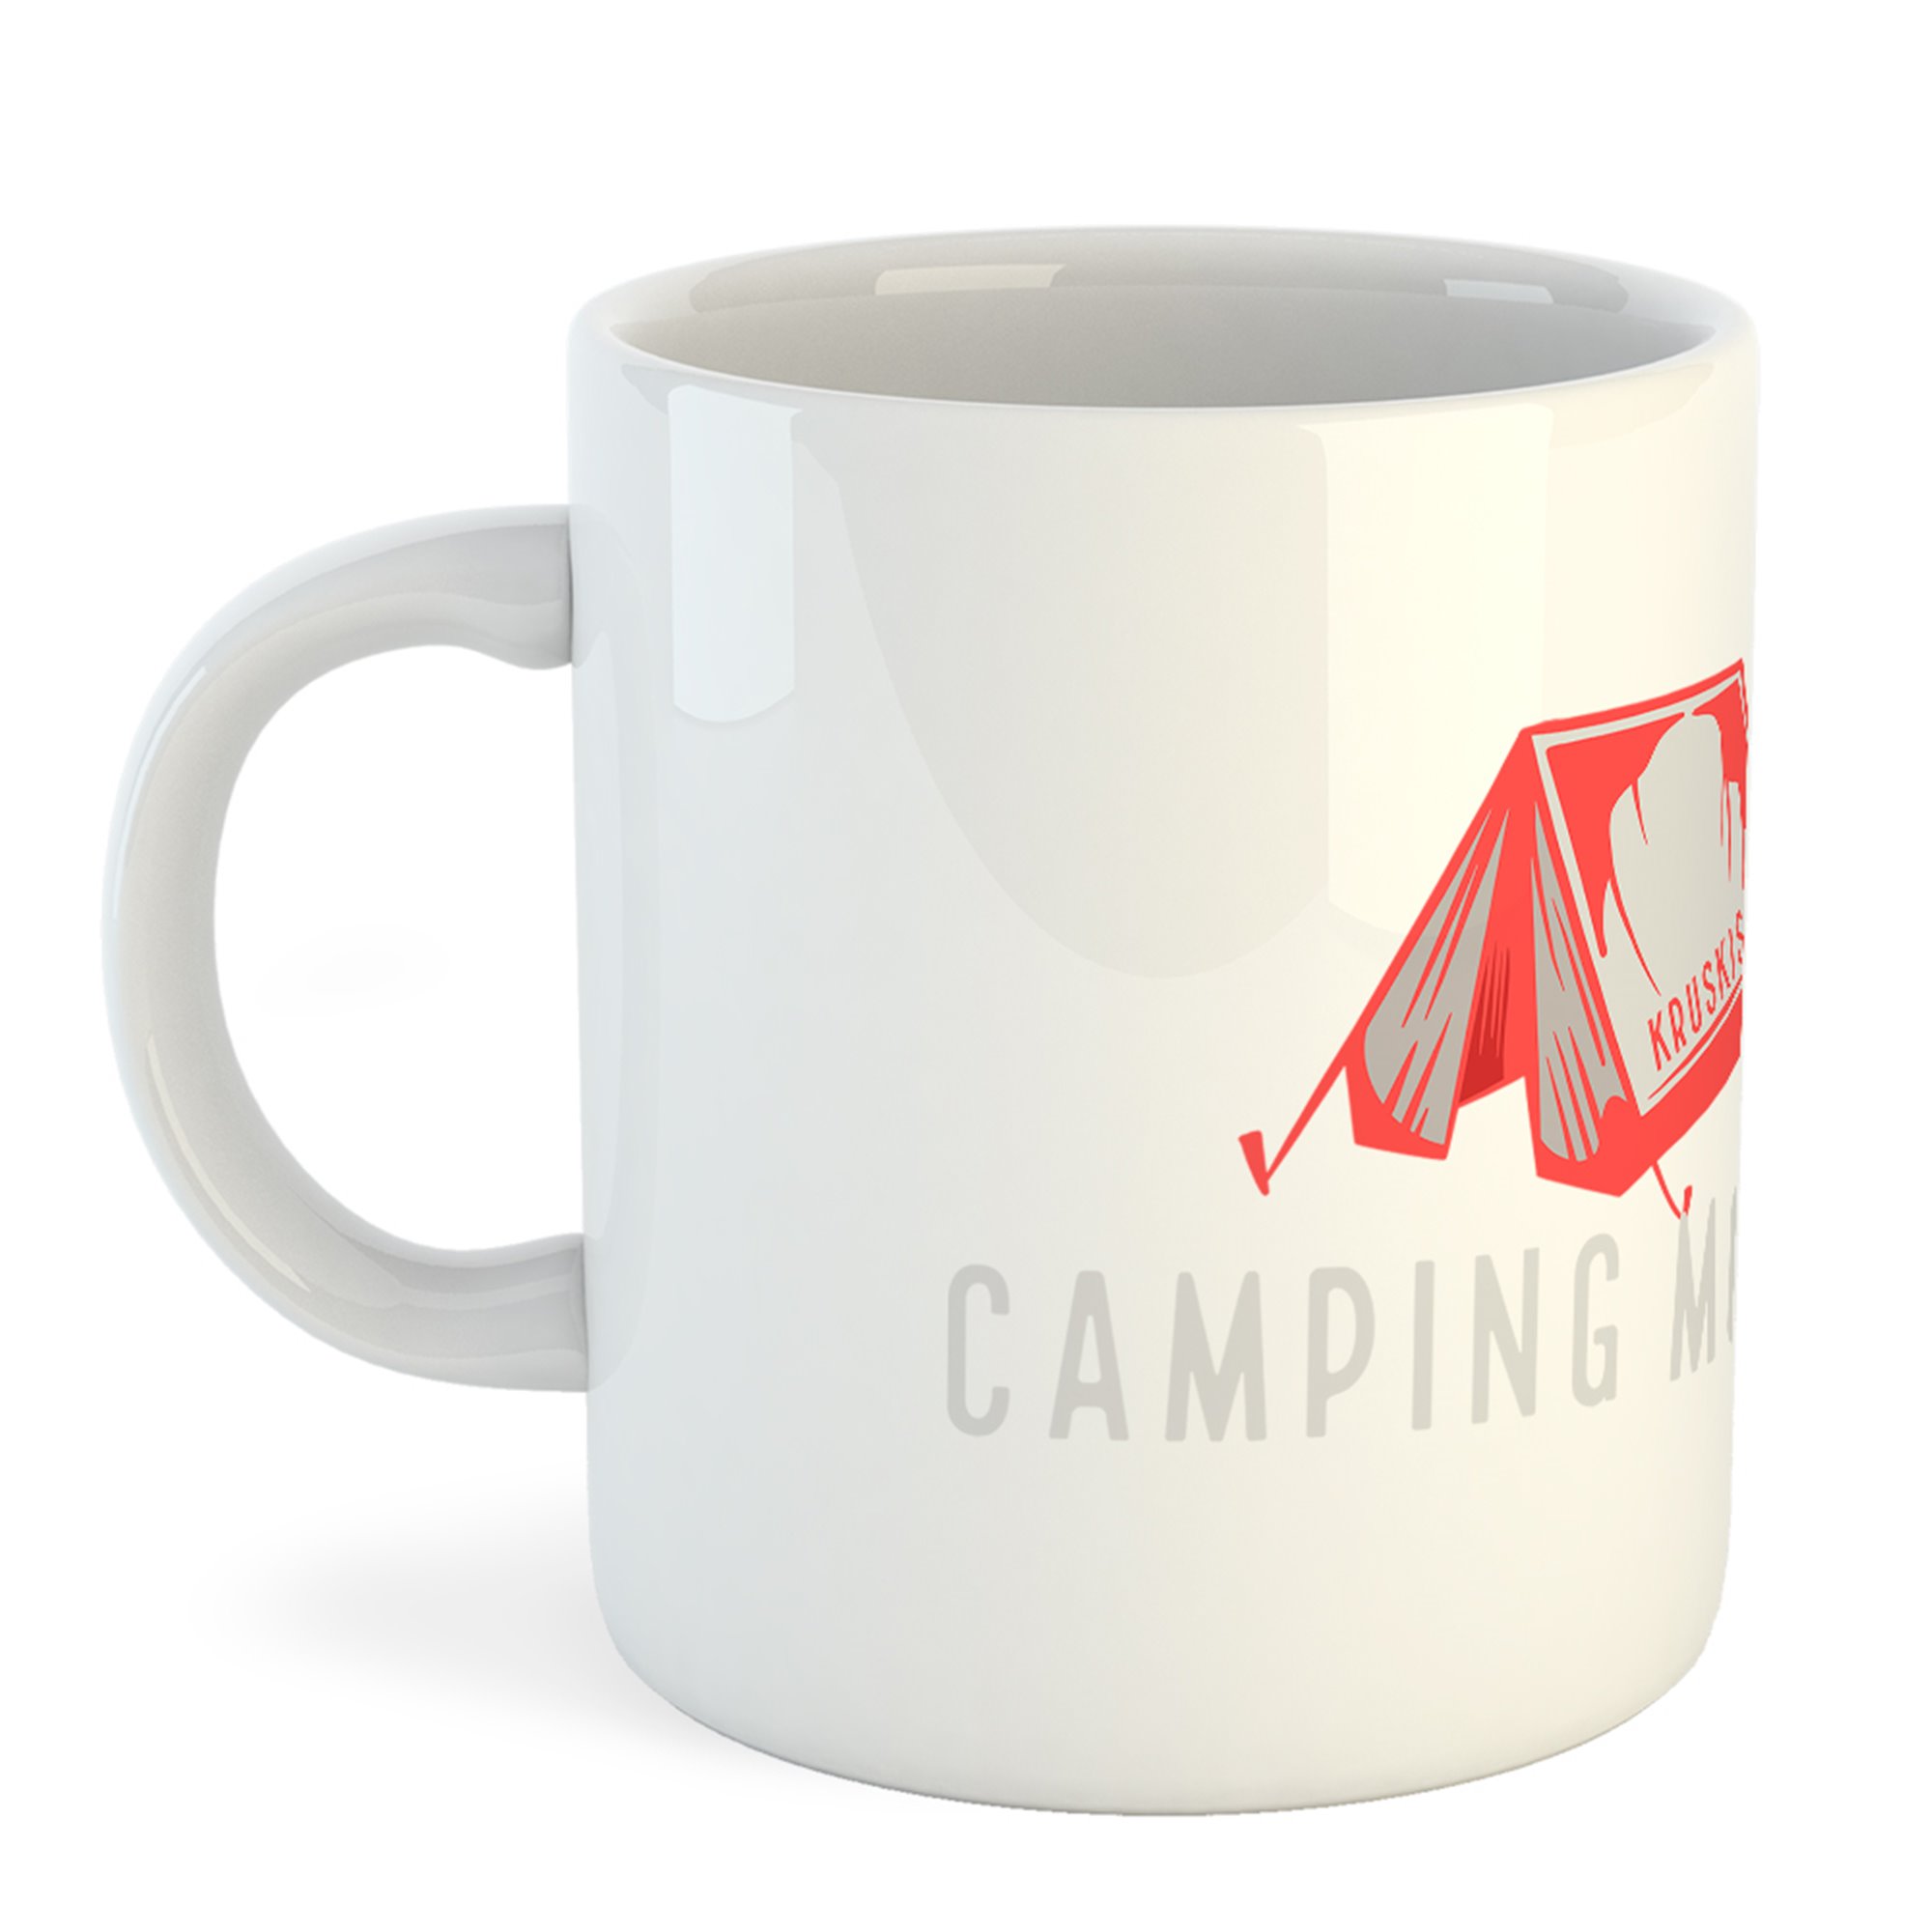 Mug 325 ml Trekking Camping Mode ON